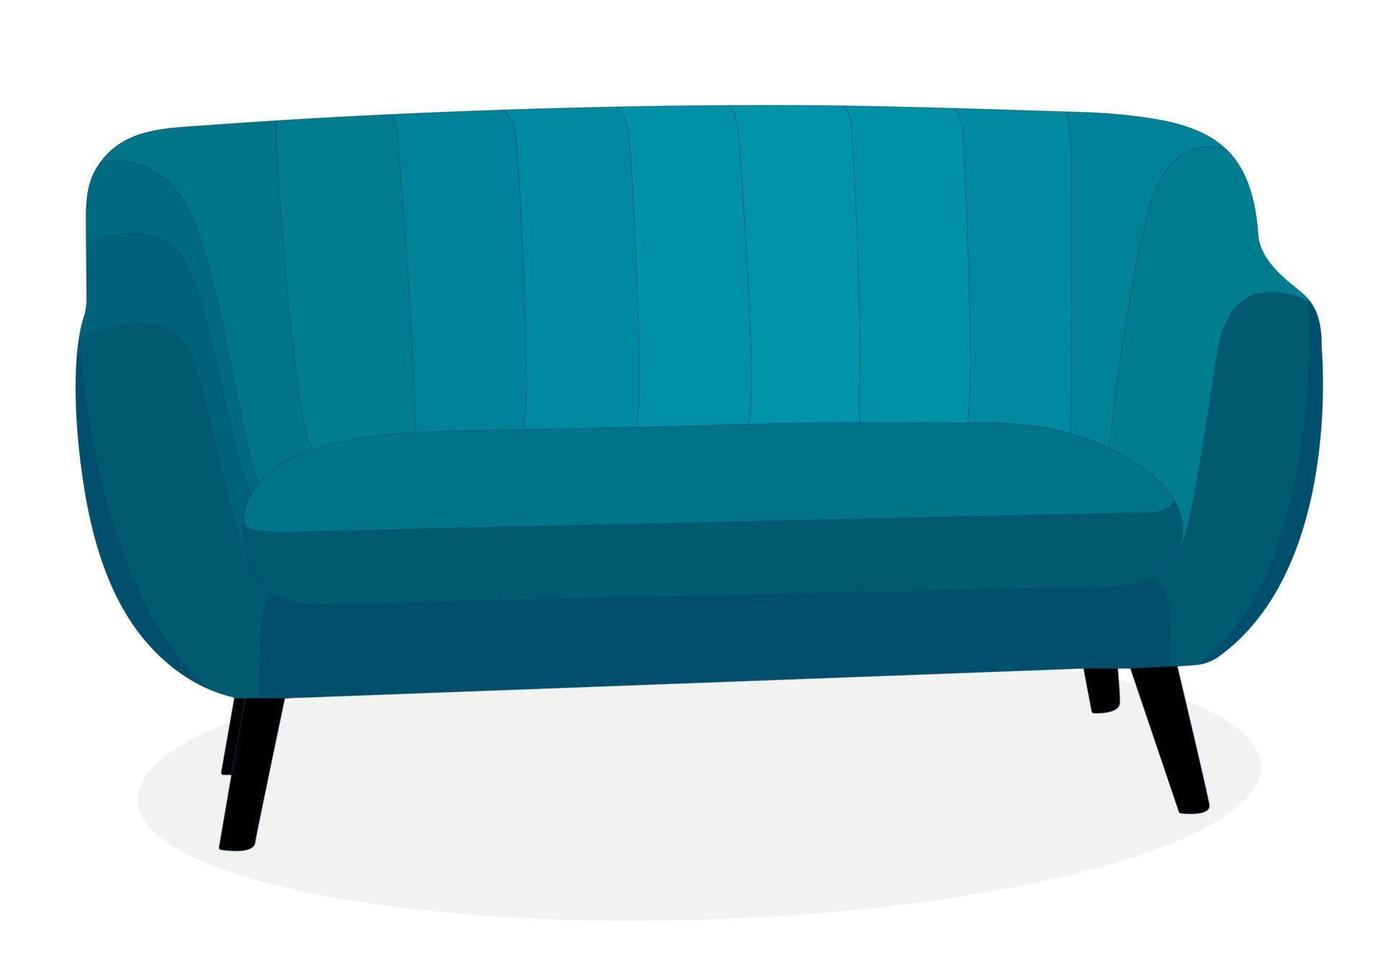 sofá elegante y cómodo de moda. objeto, modelo de mueble. estilo plano vector